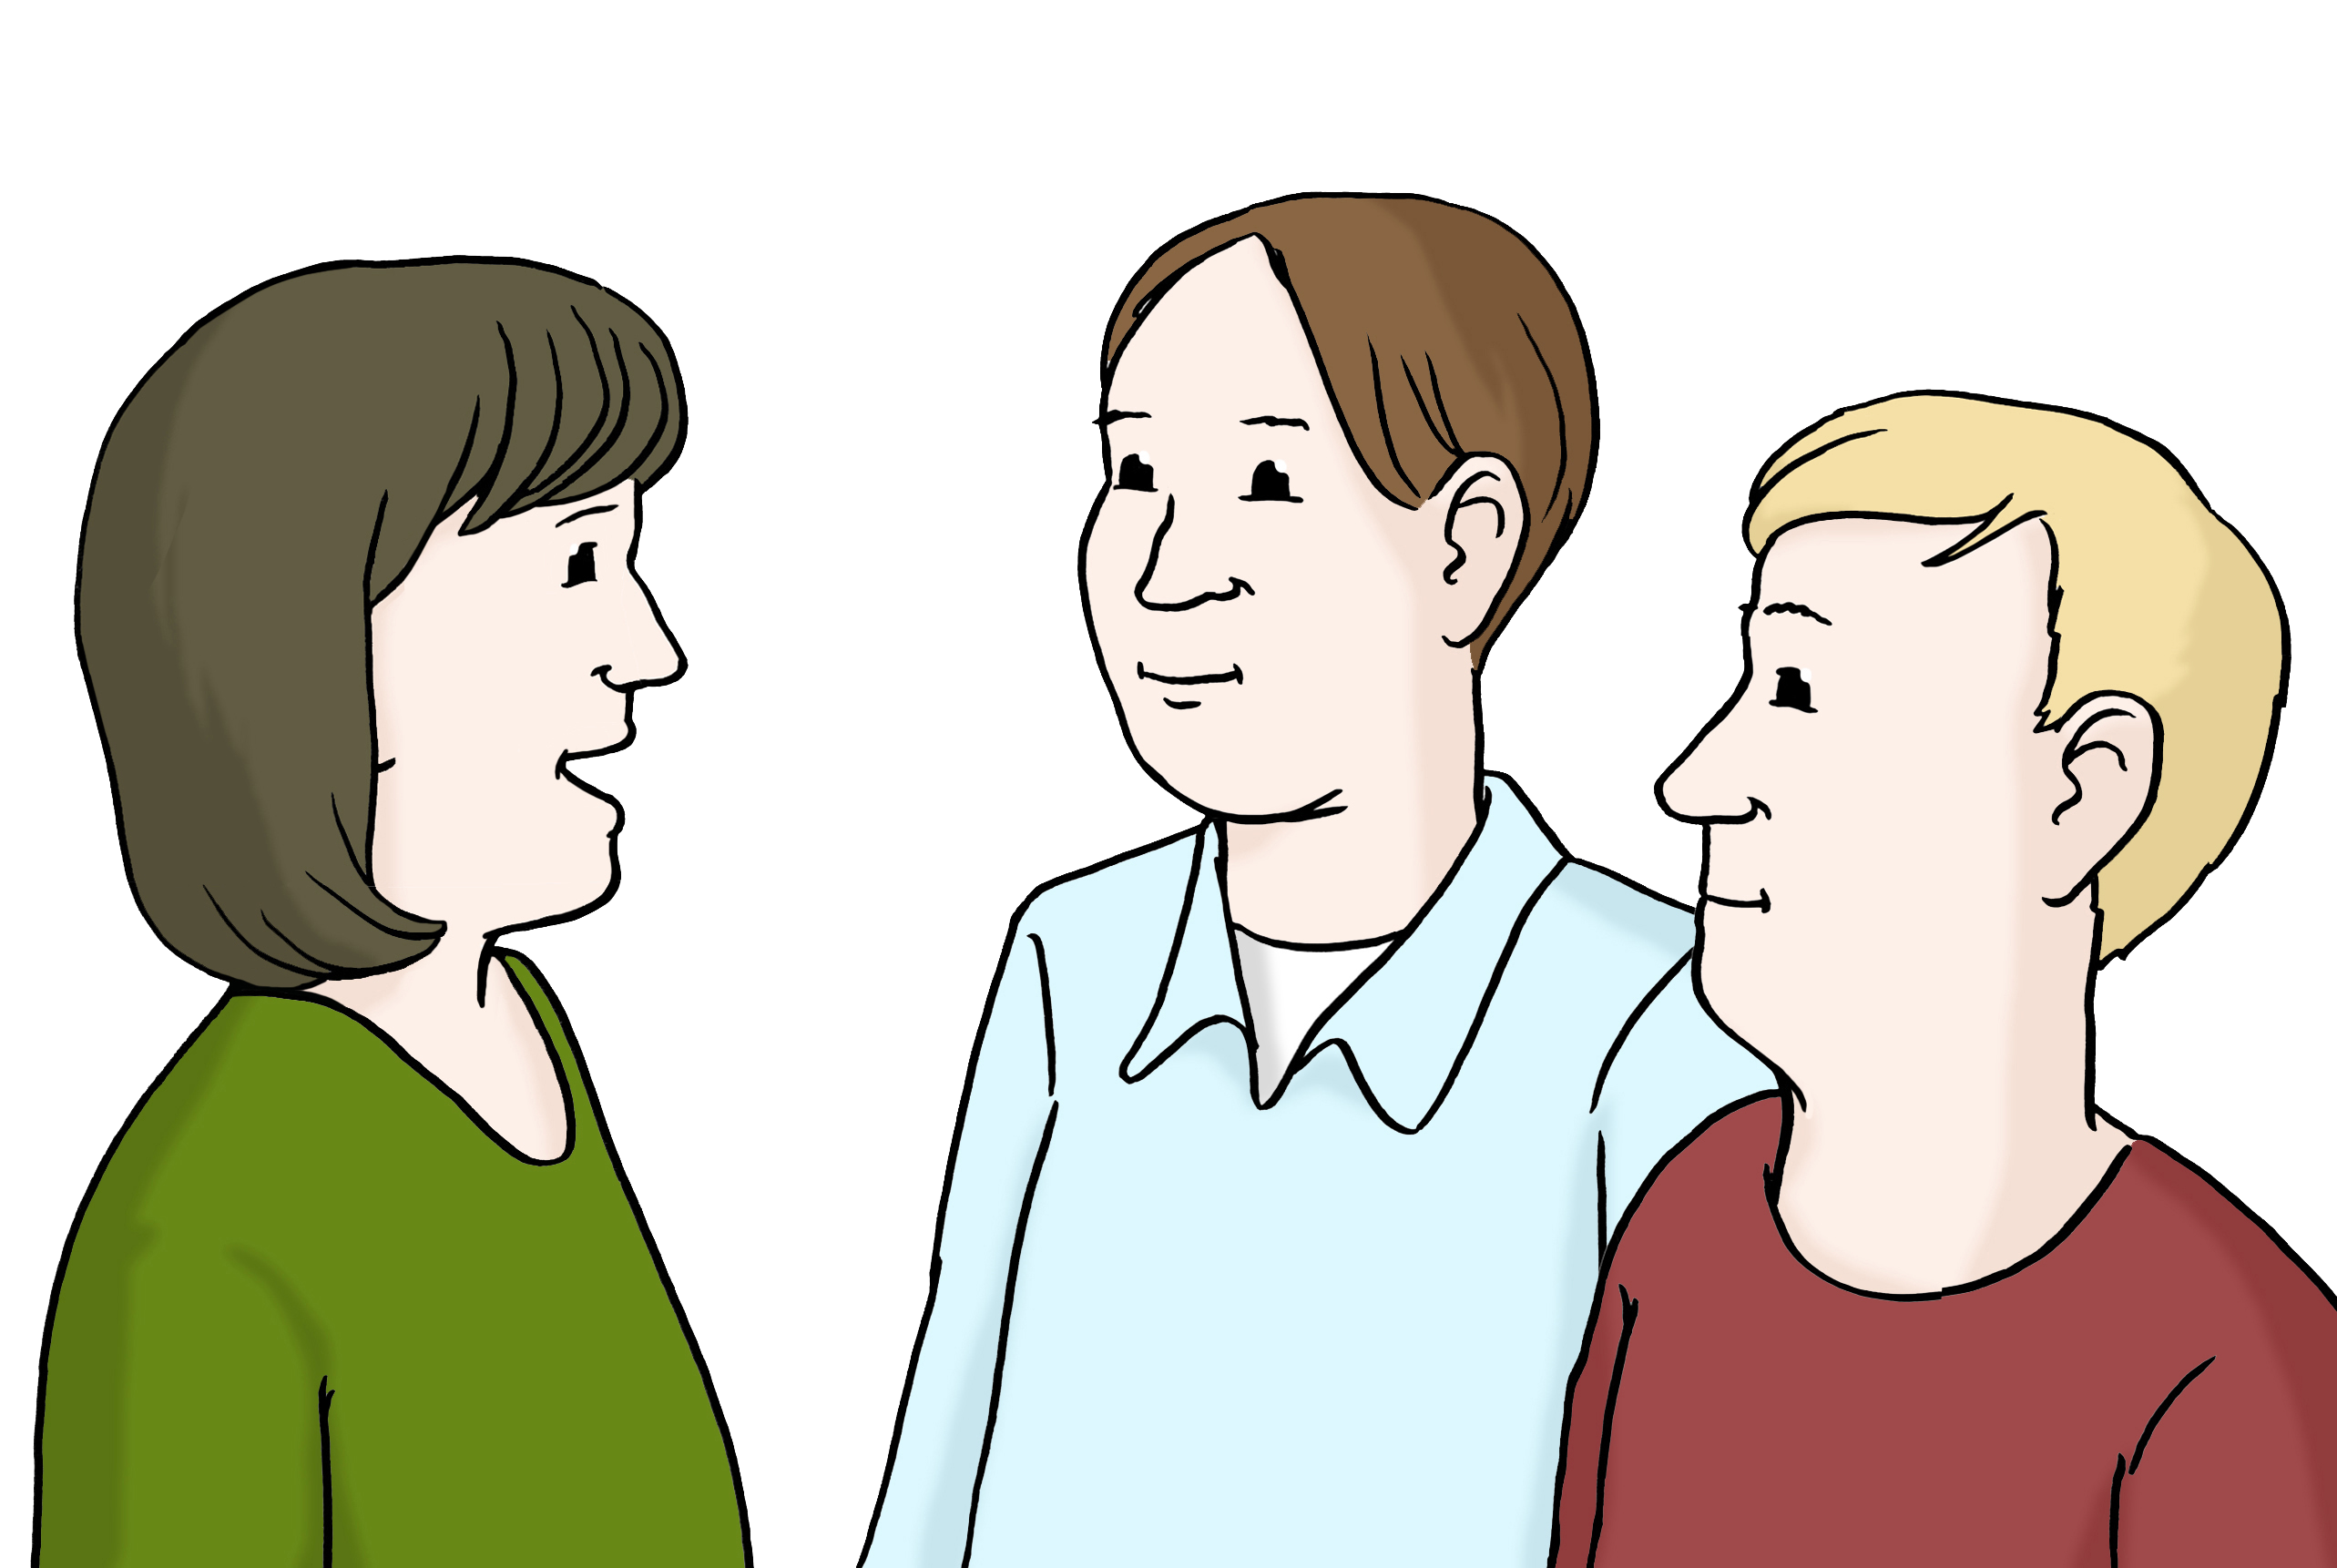 Leichte Sprache Bild: drei Menschen im Gespräch